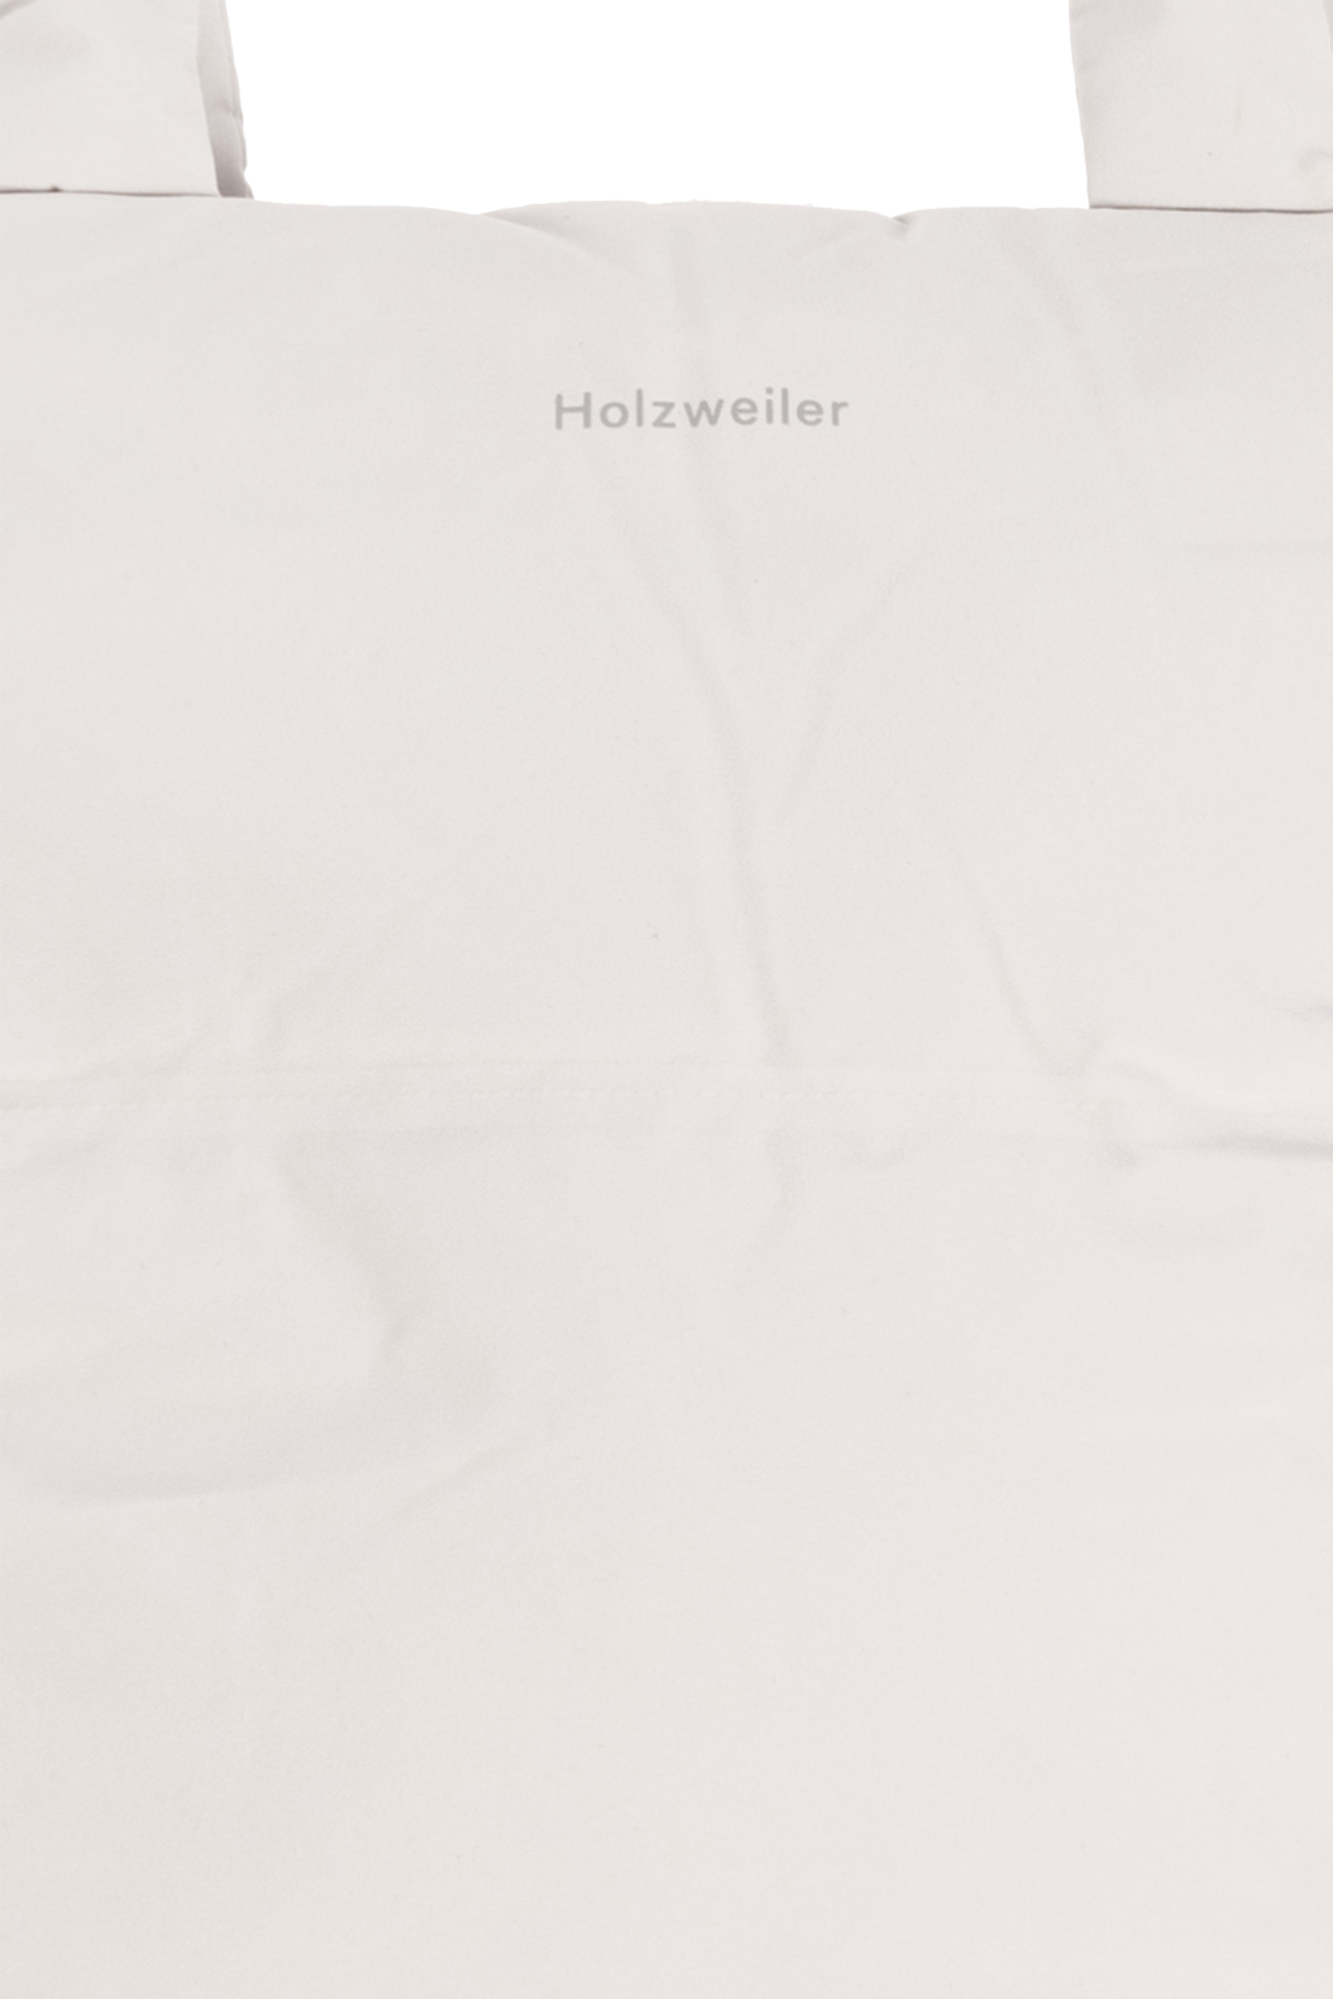 Holzweiler ‘Ulriken’ shopper bag